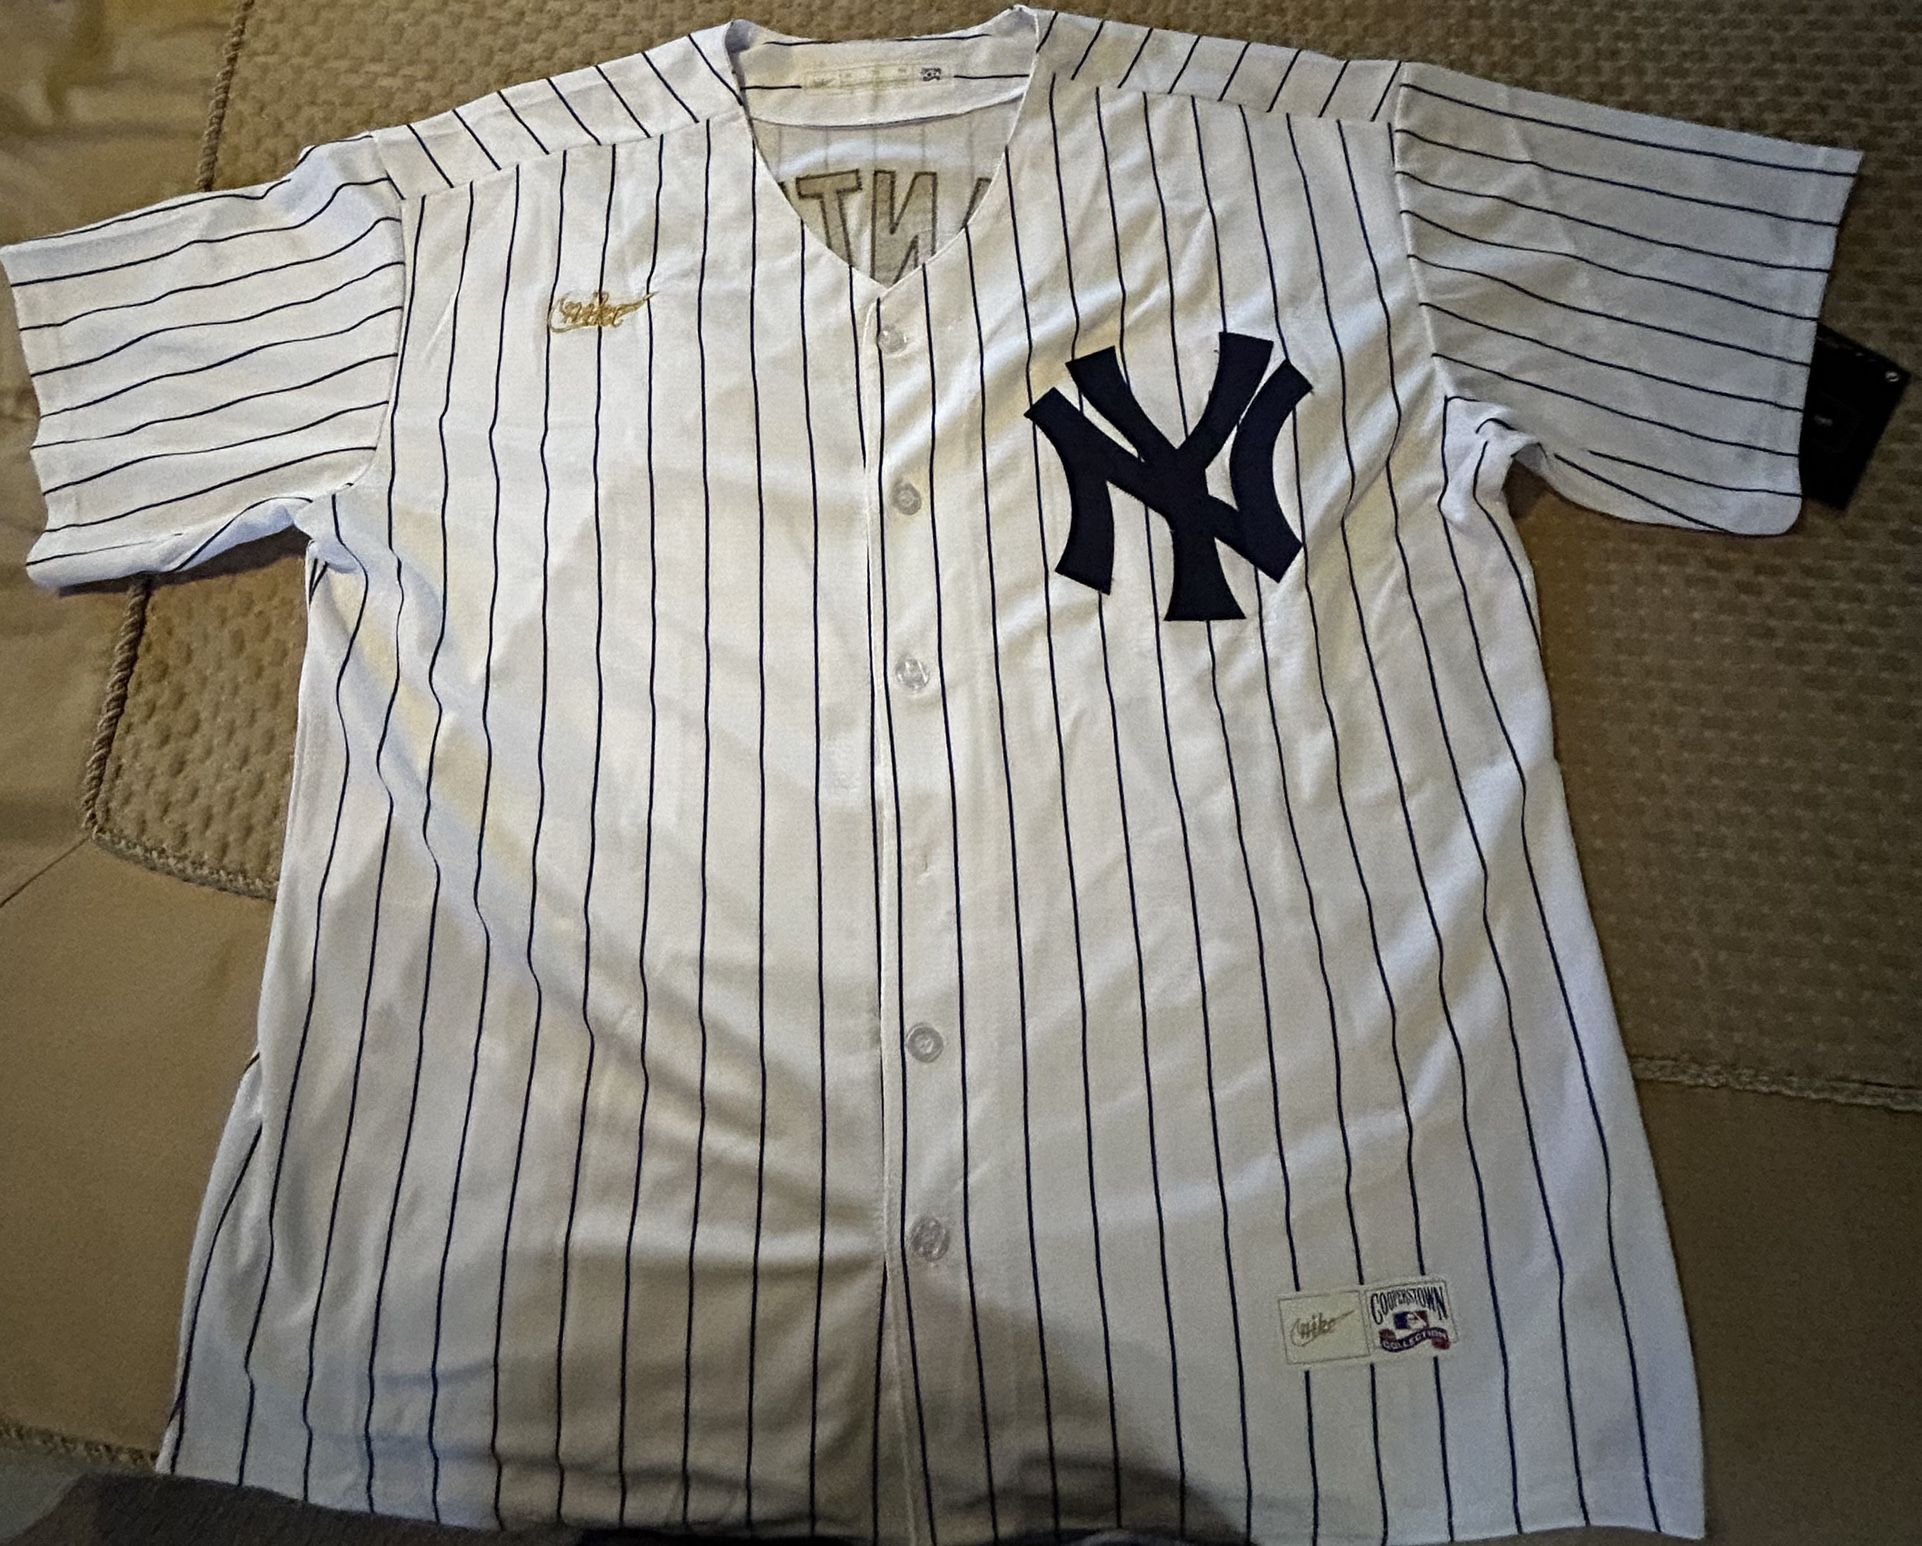 New Stitched Baseball Jerseys 